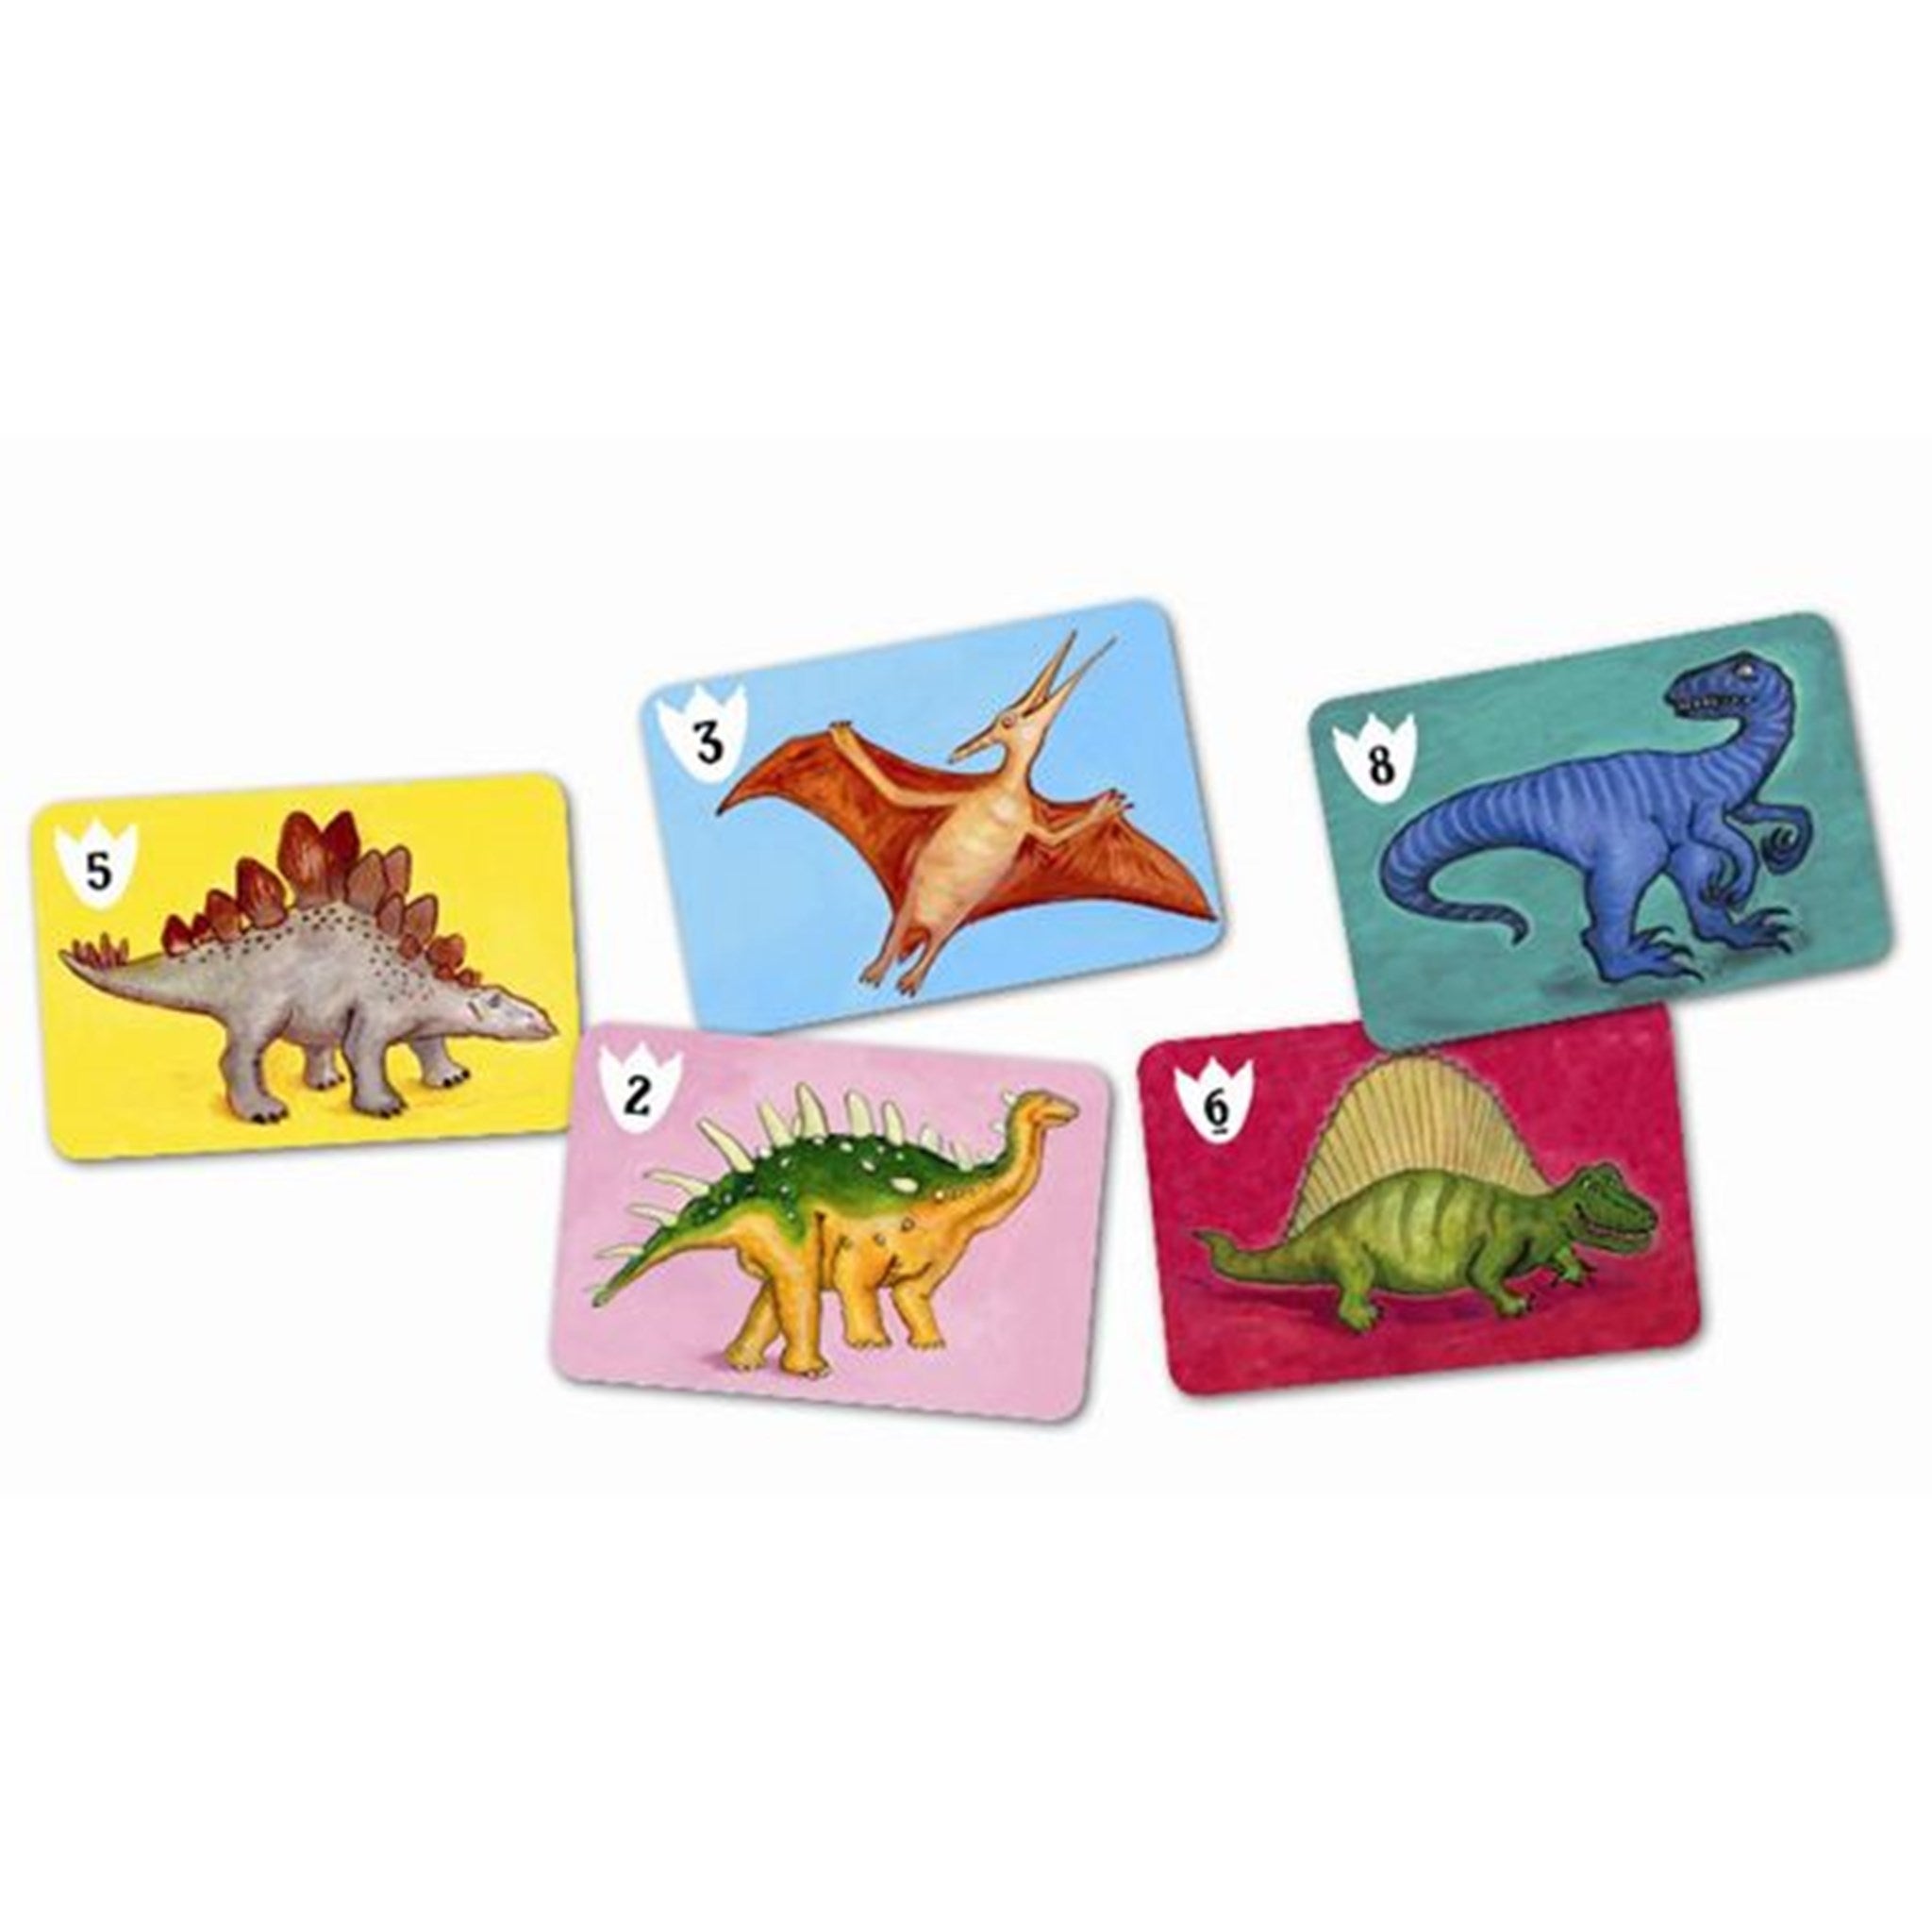 Djeco Playing Cards Batasaurus 2